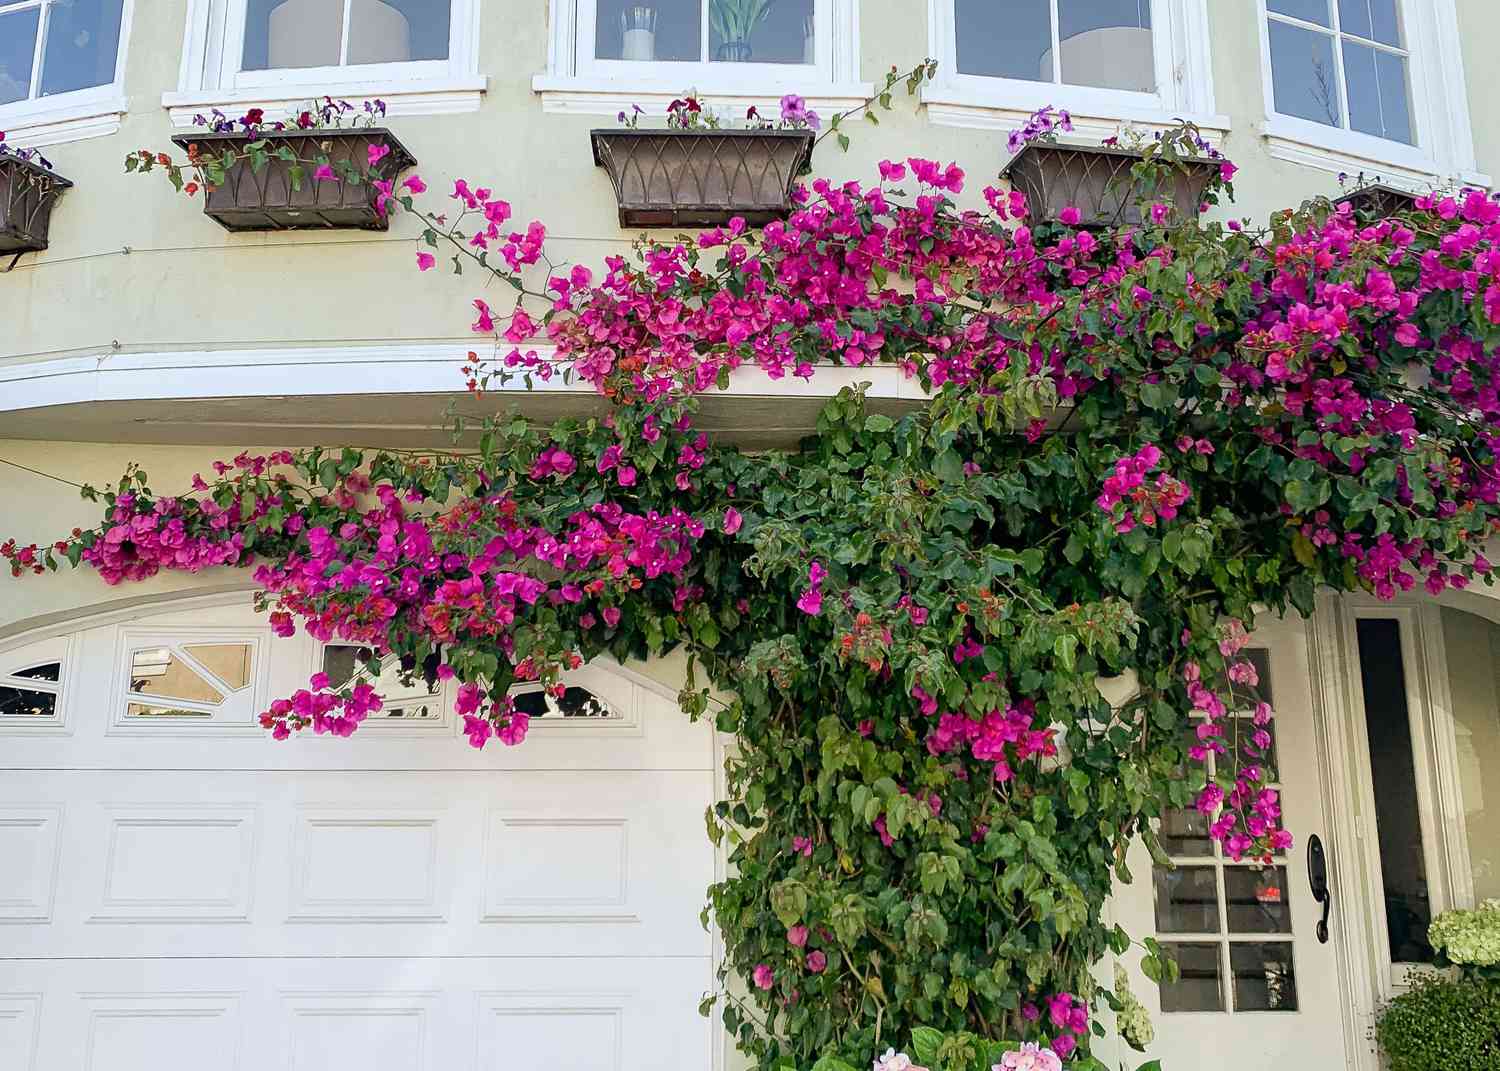 Bougainvillea-Ranke mit magentafarbenen Blütenblättern klettert außen am Haus